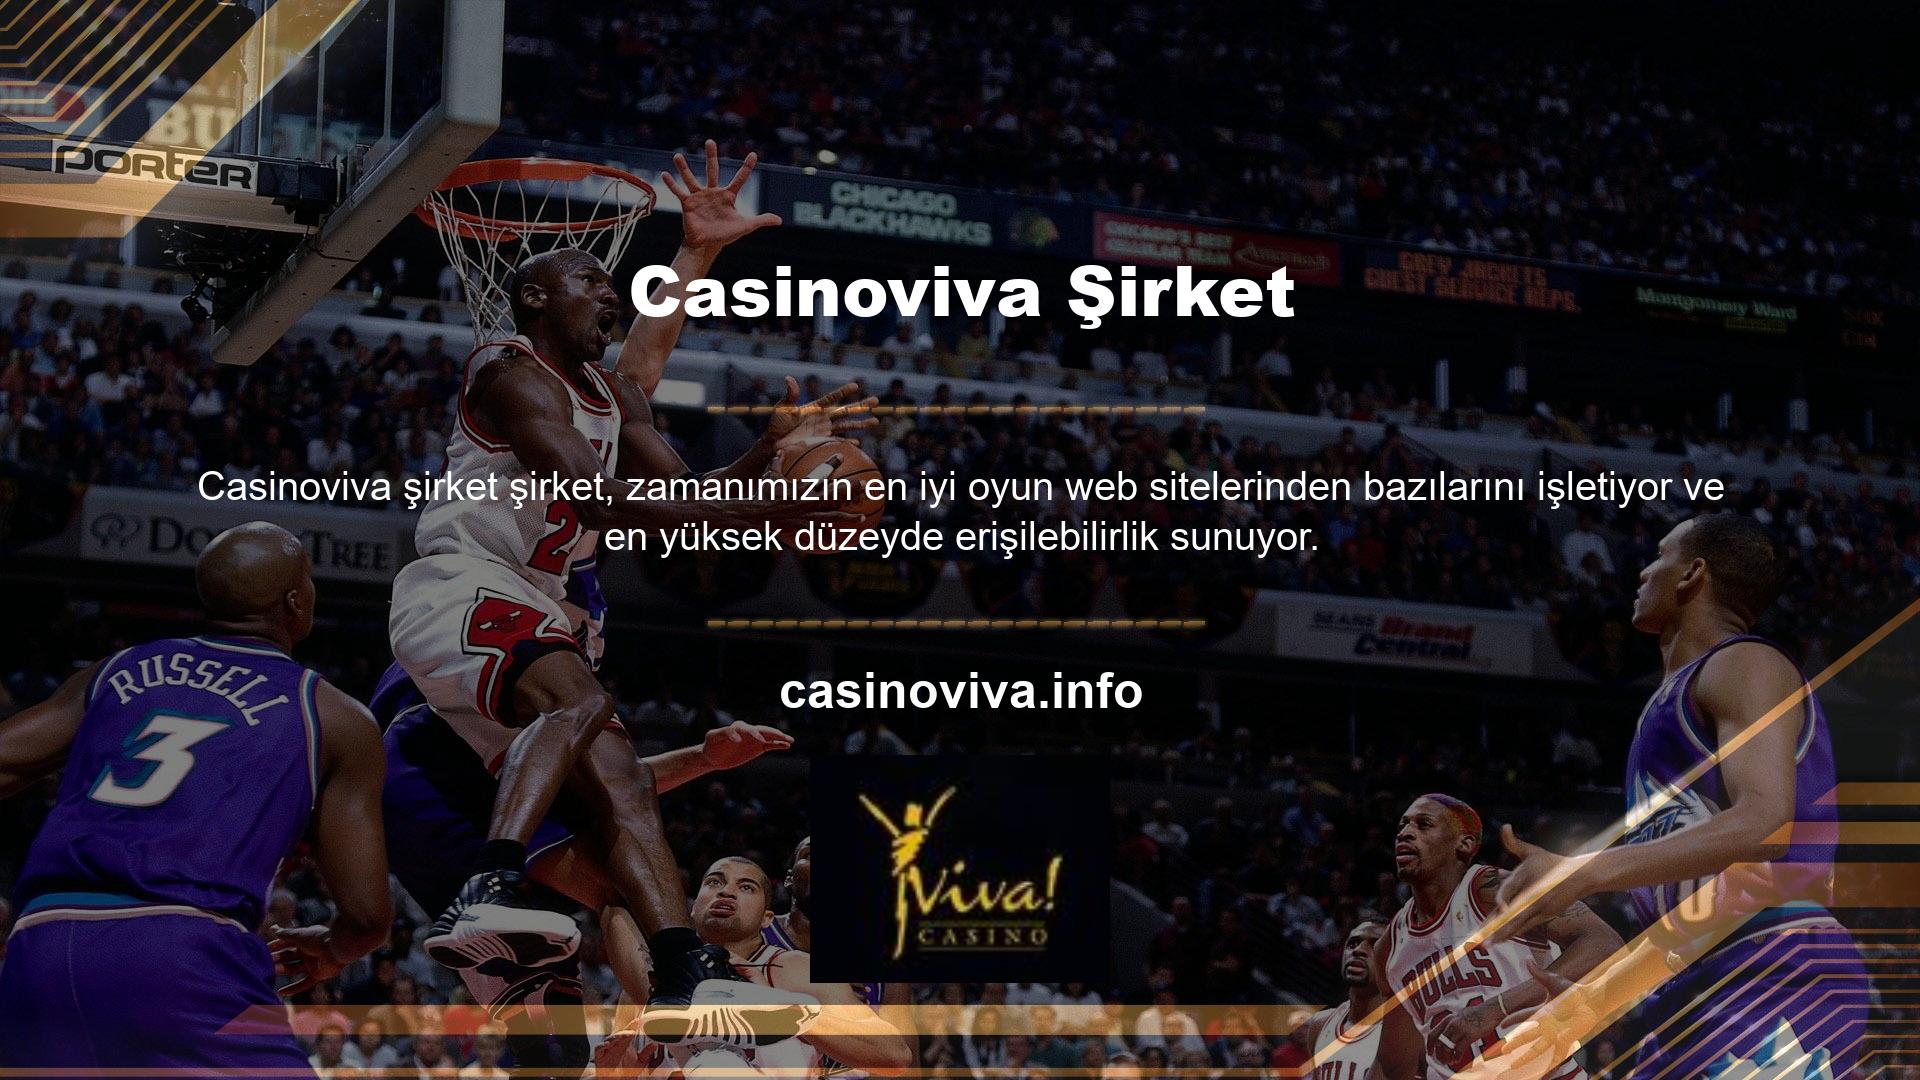 Canlı basketbol bahislerini seviyorsanız Casinoviva, bahis kuponlarınızı doldurmanıza yardımcı olacak istatistikler, analizler ve canlı bir bölüm sunar